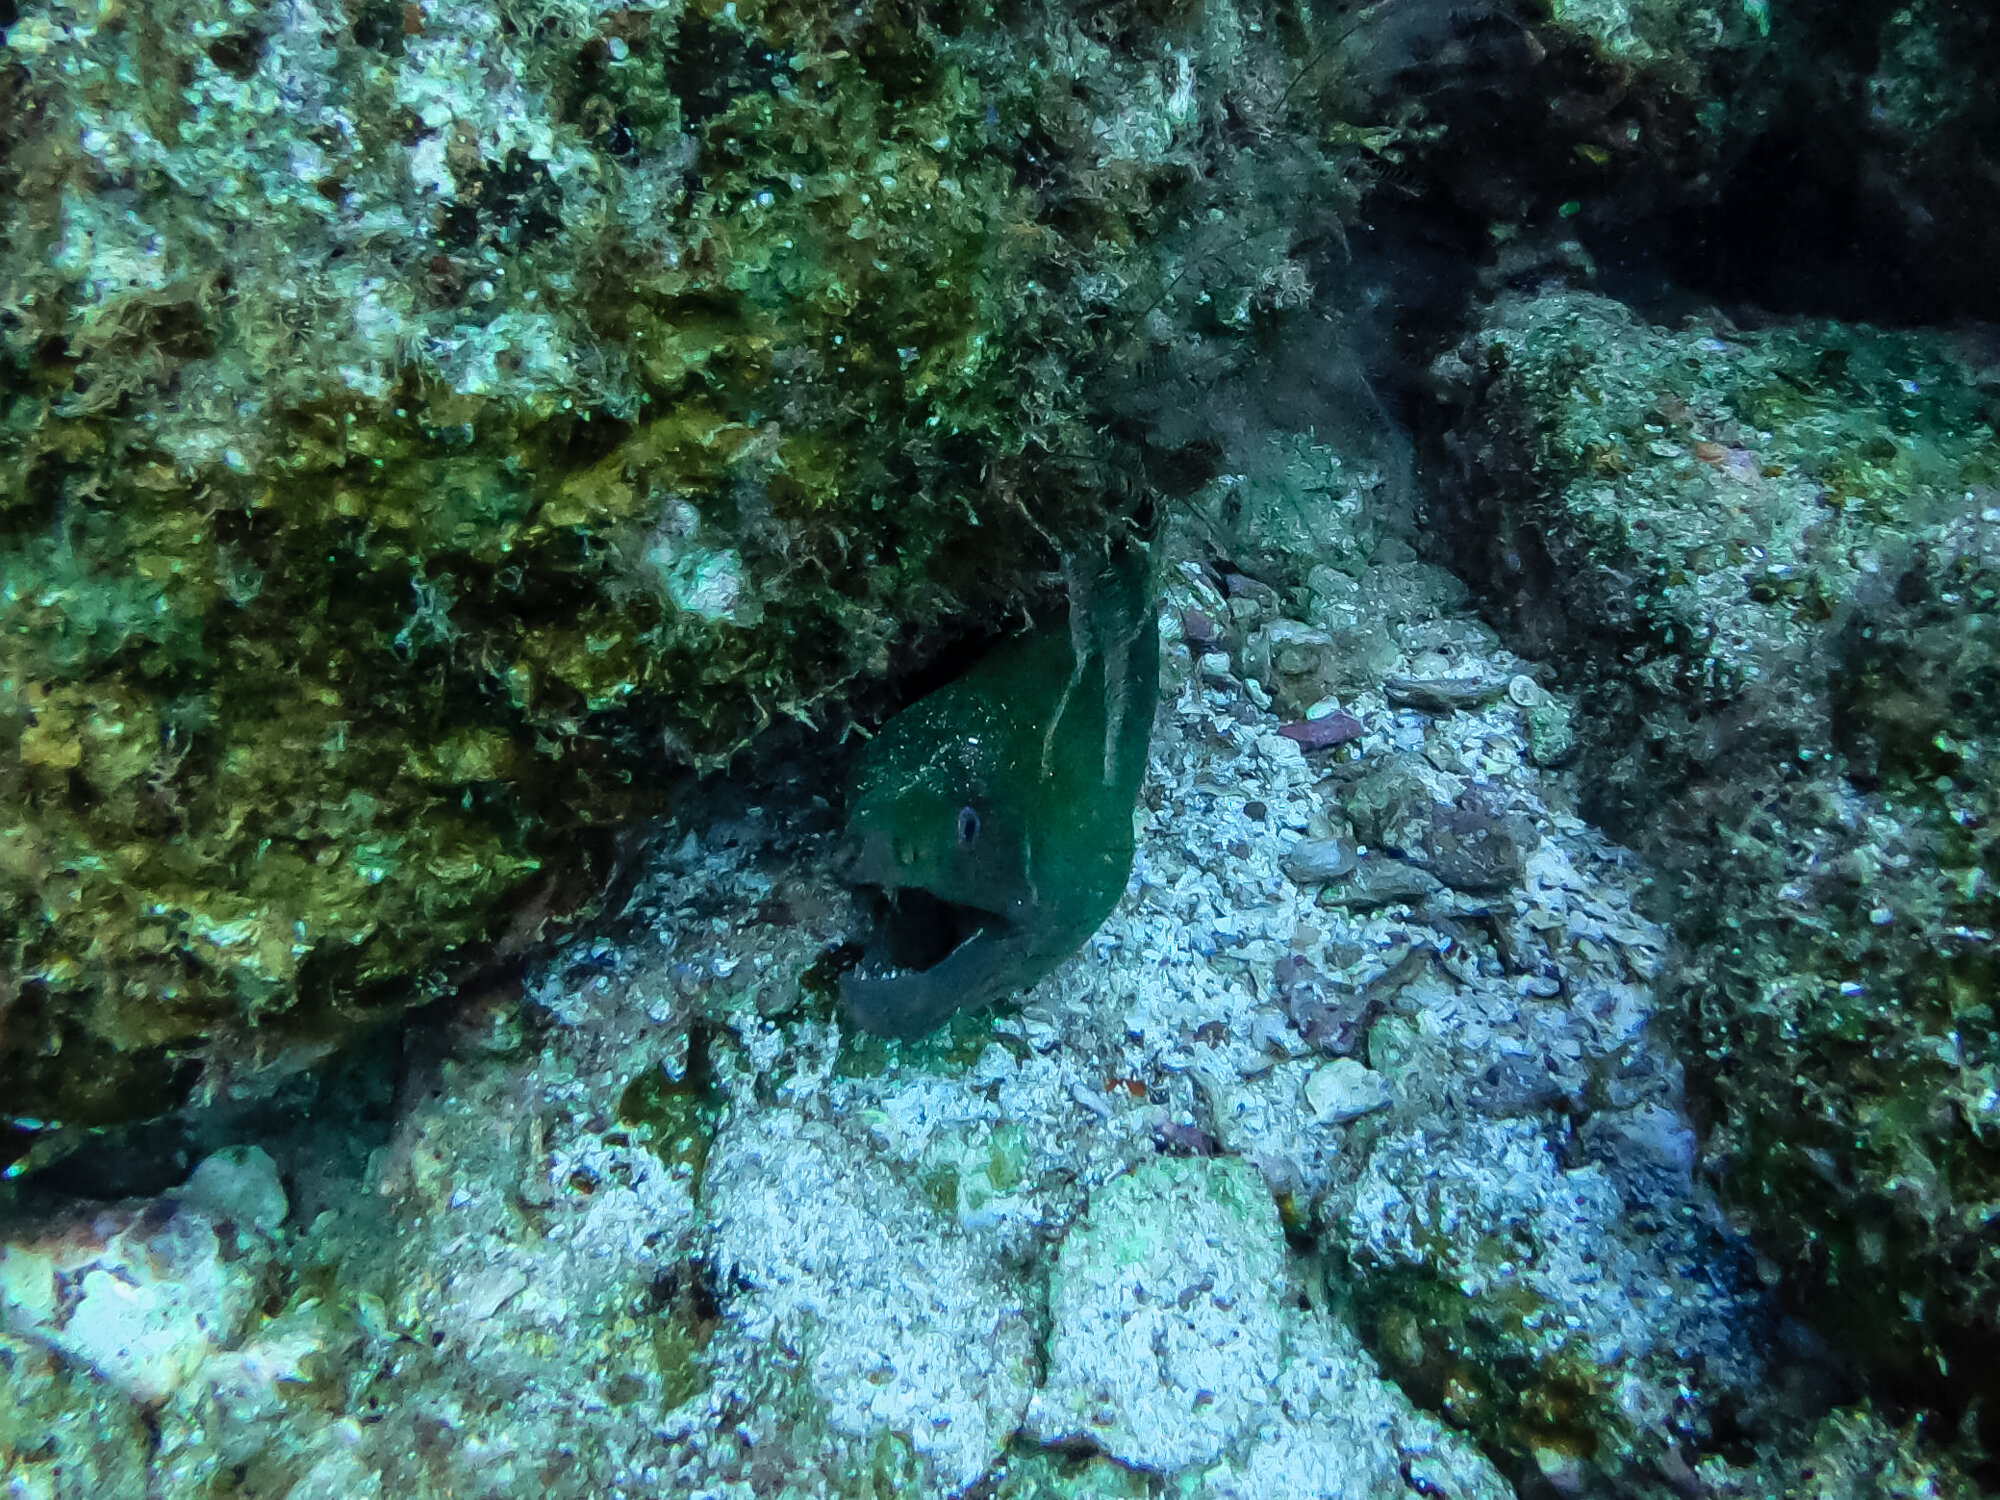 Scuba Diving Eel